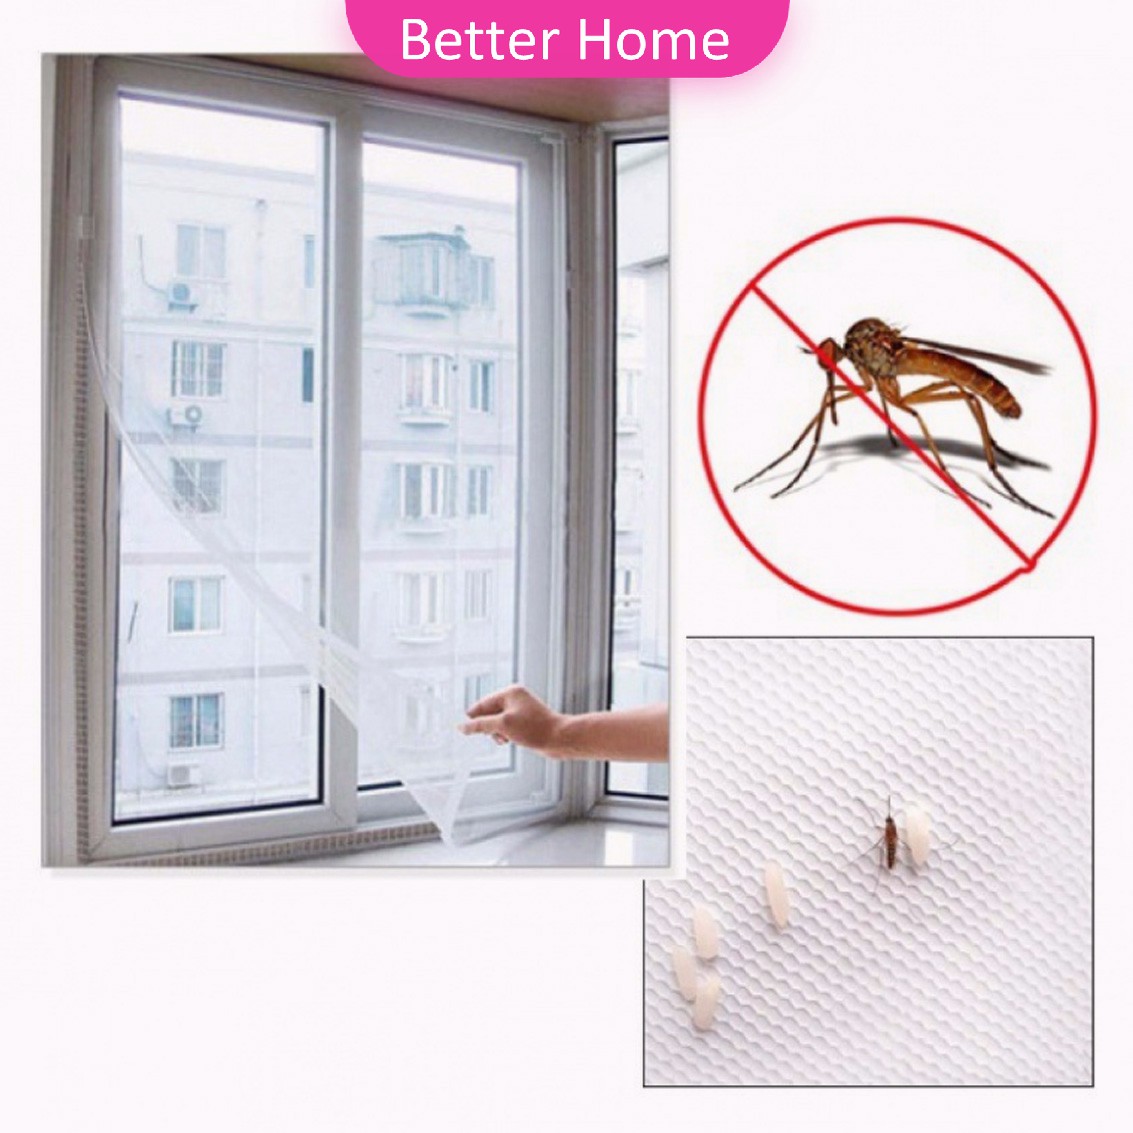 ม่าน หน้าต่าง มุ้งตาข่าย สีขาว ป้องกันยุงและแมลง คุณสามารถติดเองได้ง่าย Mosquito screen